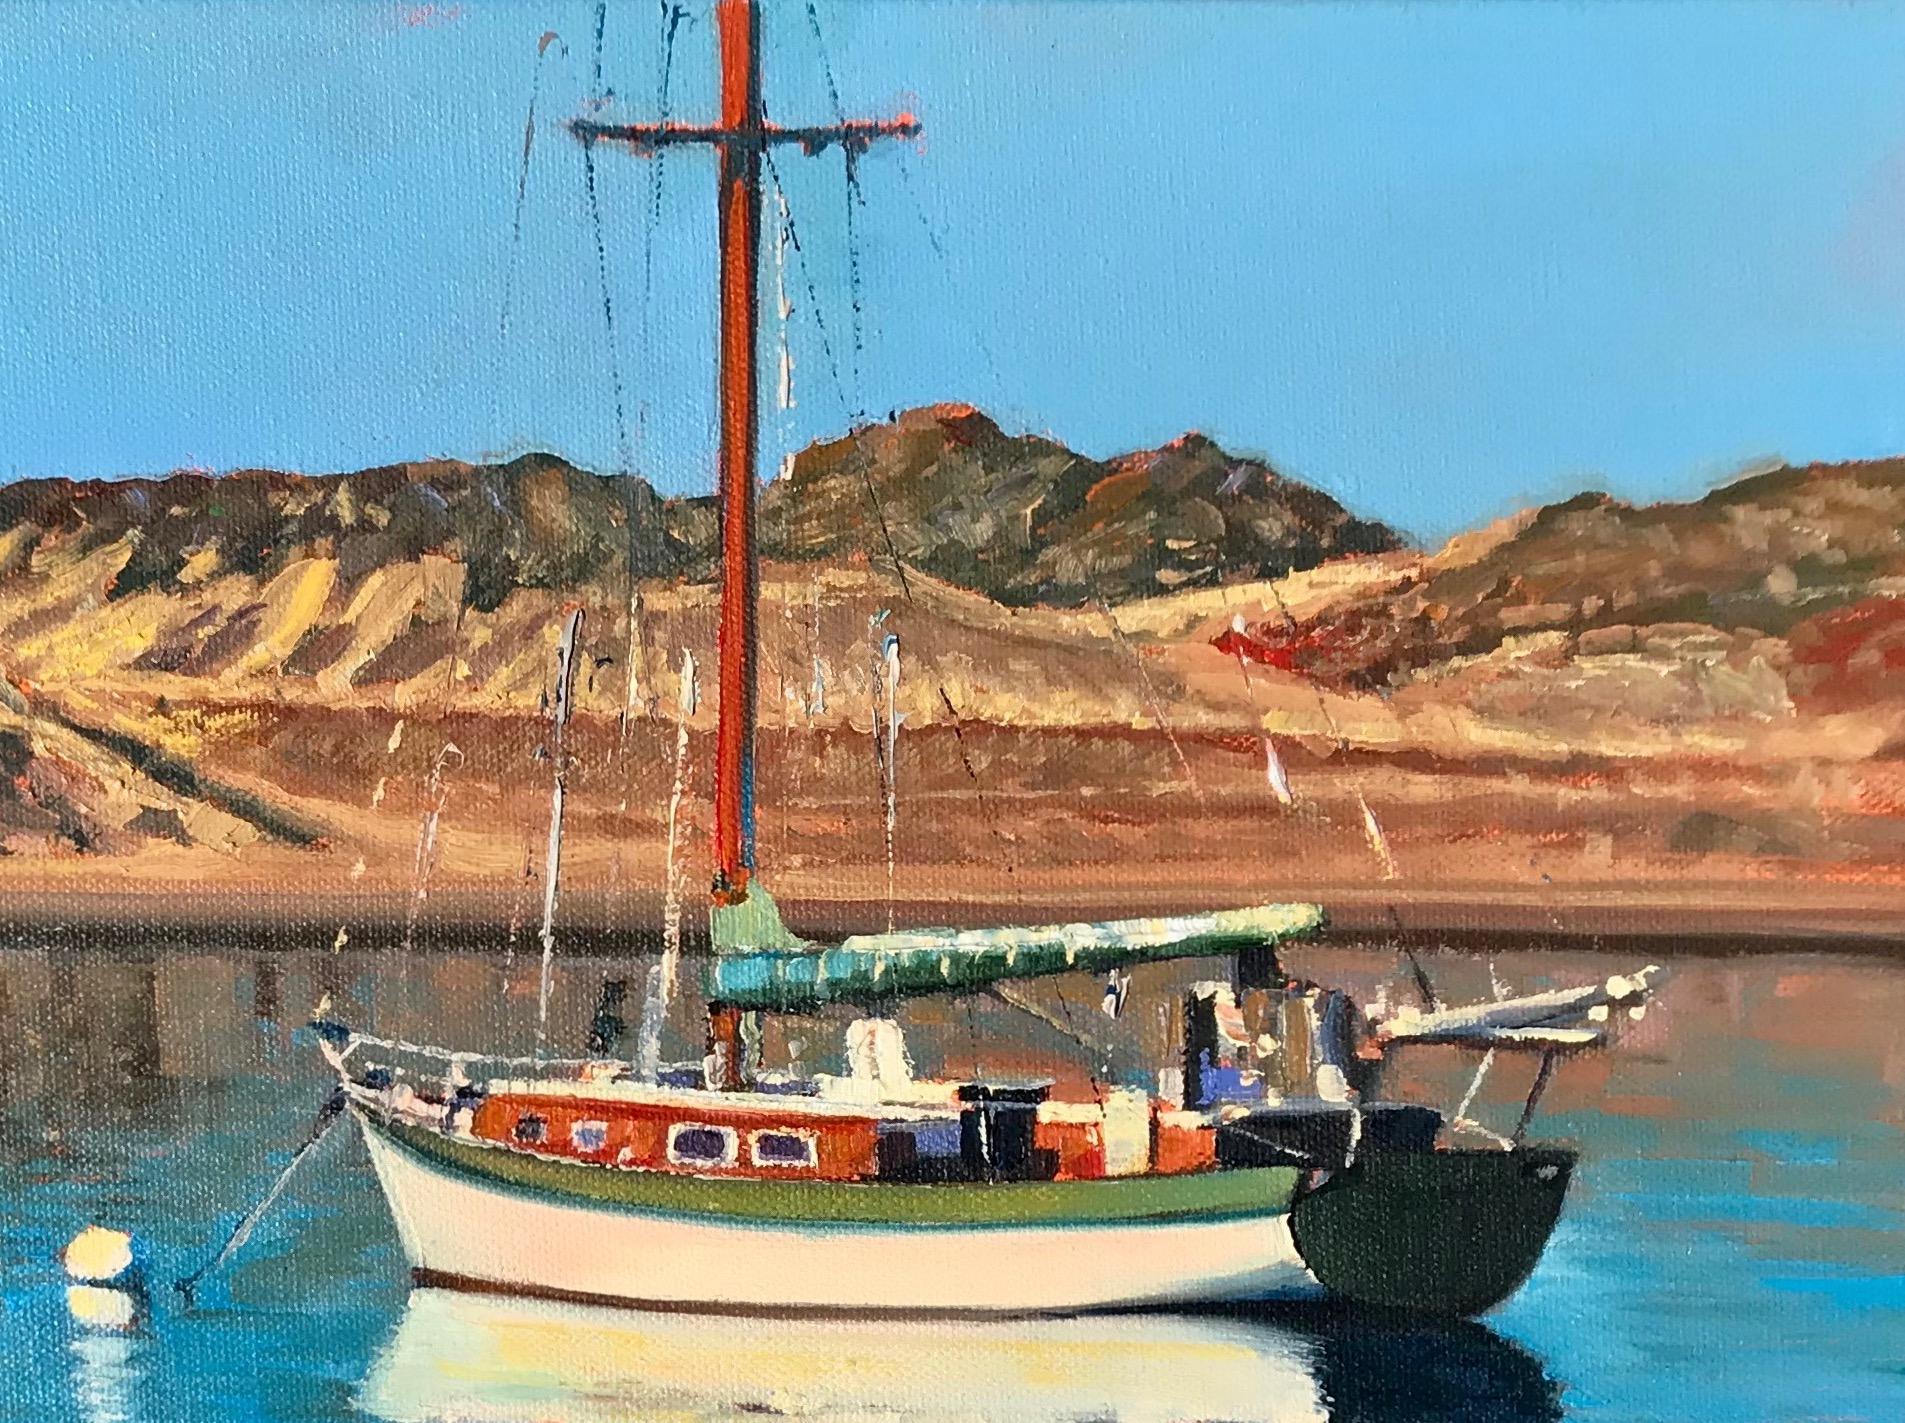  « Morro Bay Reflections » - Voilier dans un port avec des reflets d'eau ondulantes - Réalisme américain Painting par Tom Swimm